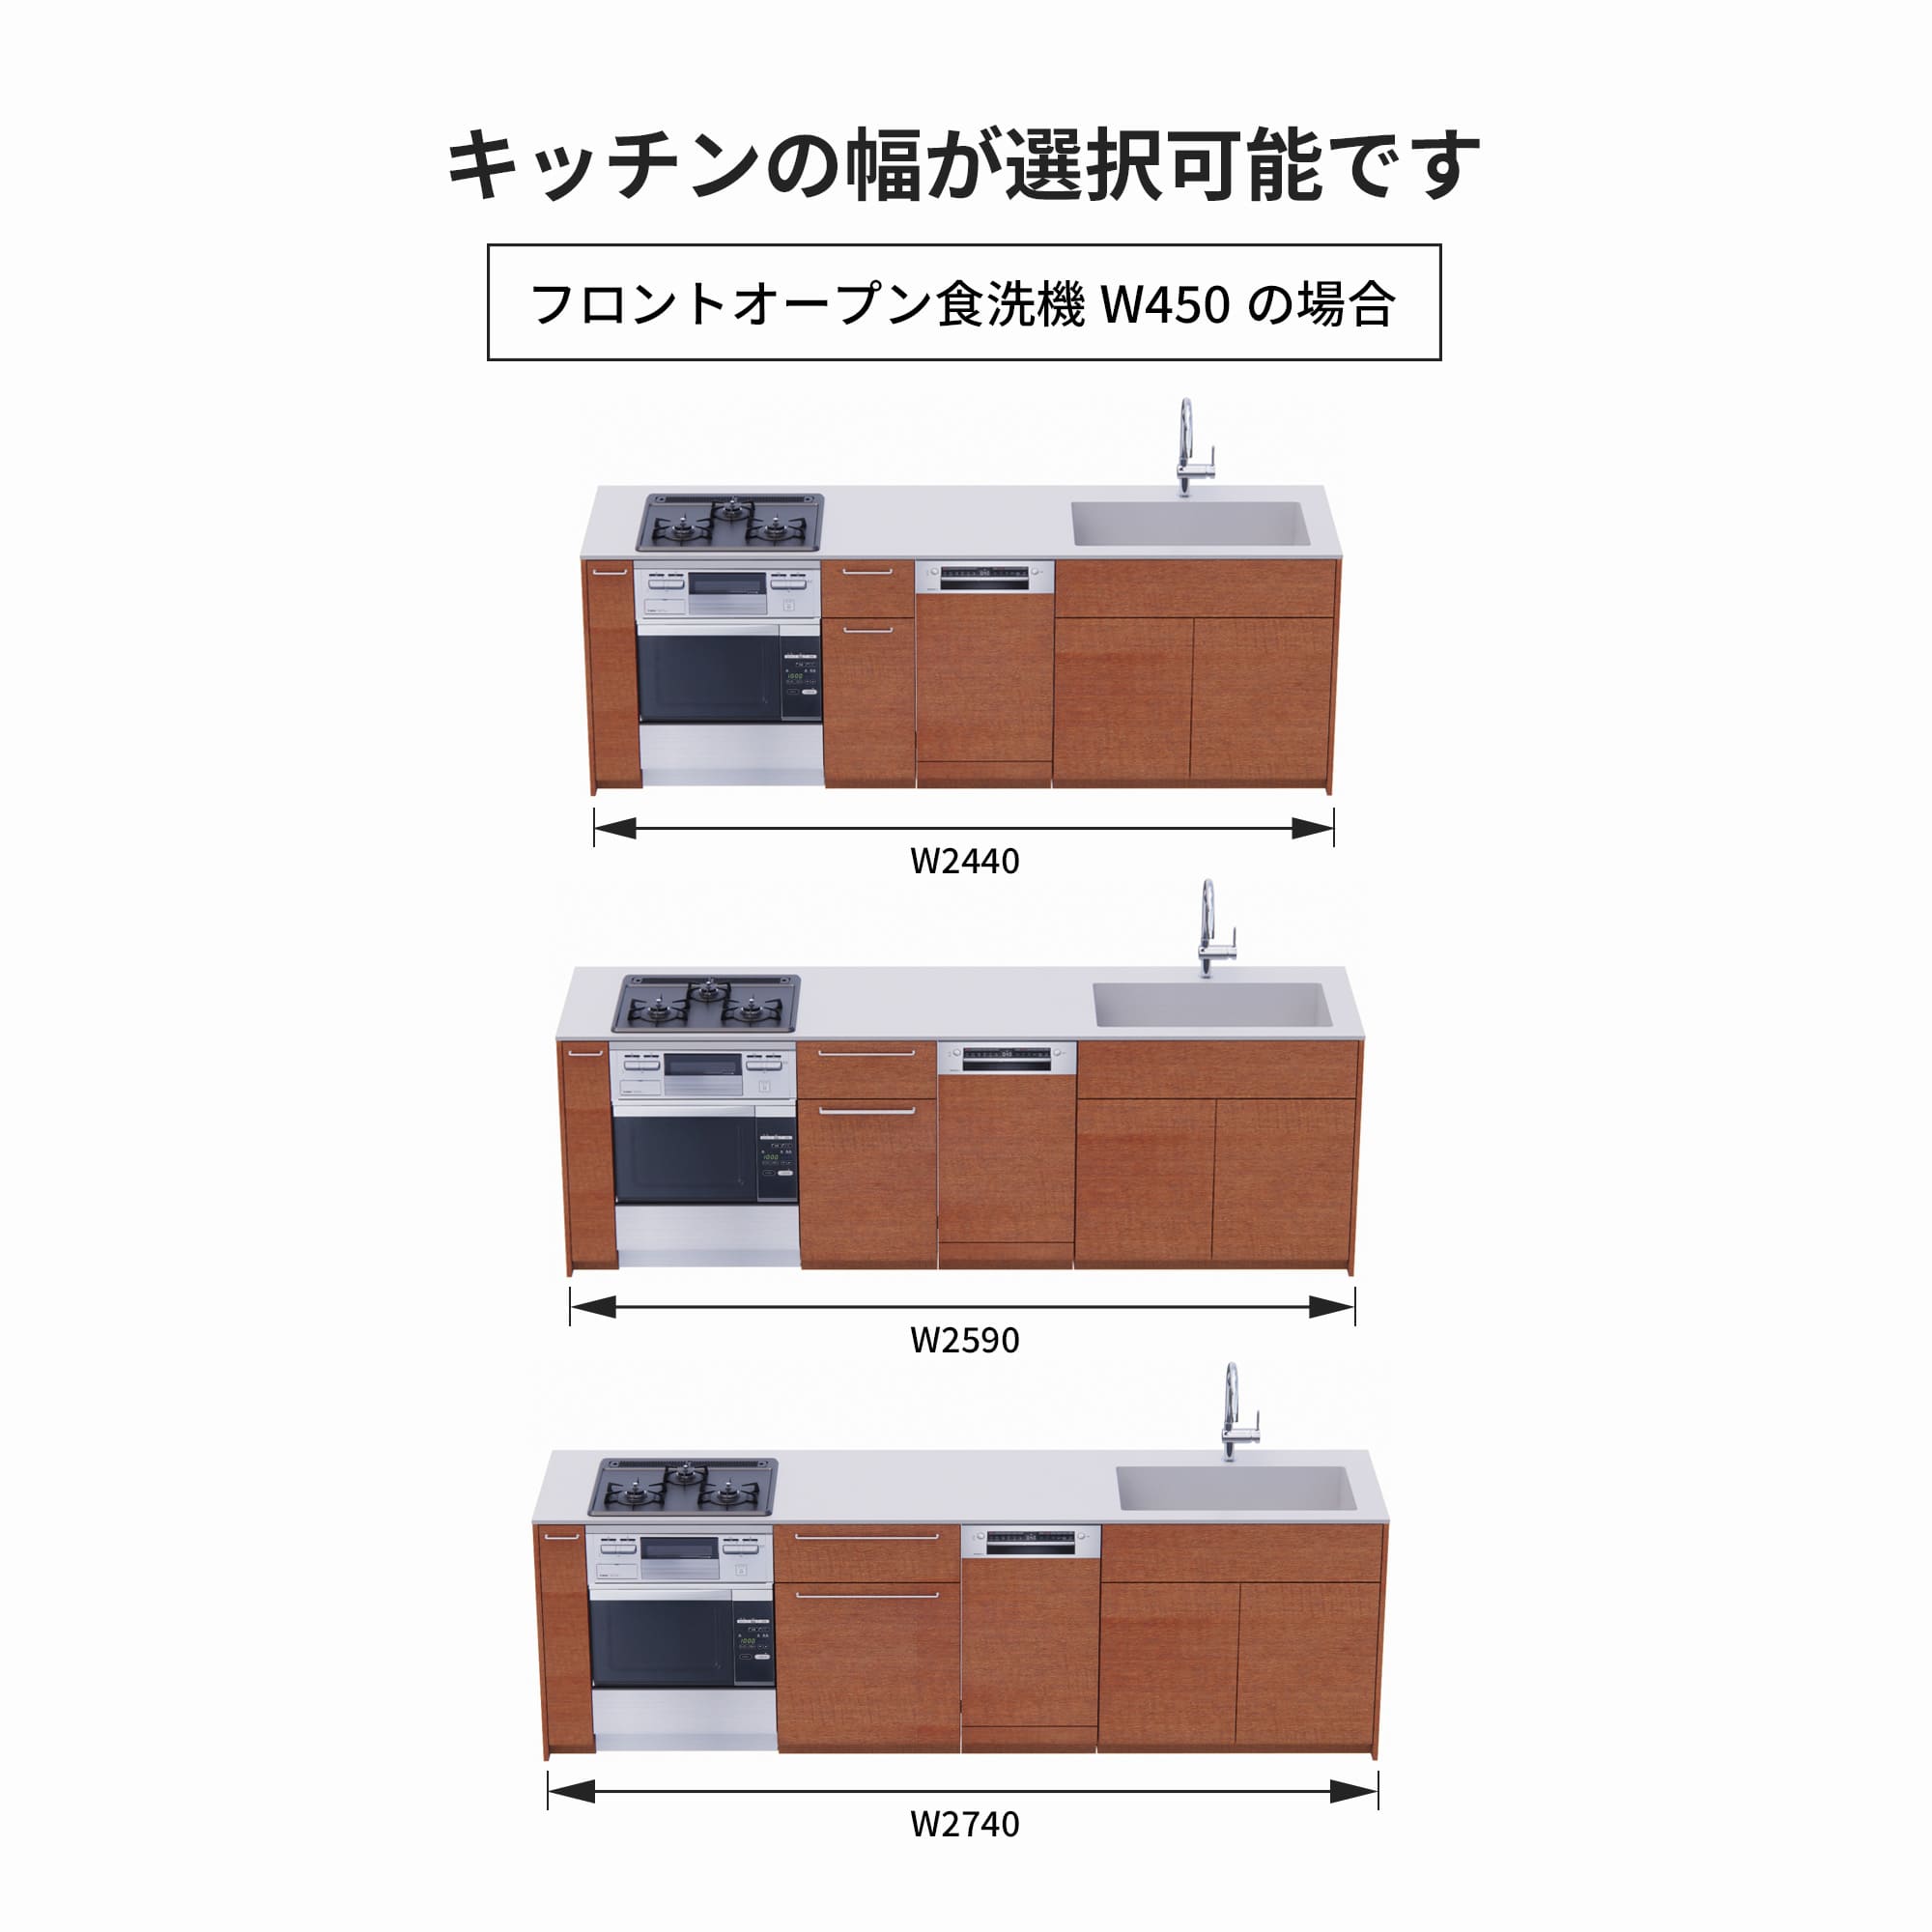 木製システムキッチン 壁付け型 W2440～2740・コンロあり / オーブンあり / 食洗機あり KB-KC022-28-G183 フロントオープン450の場合